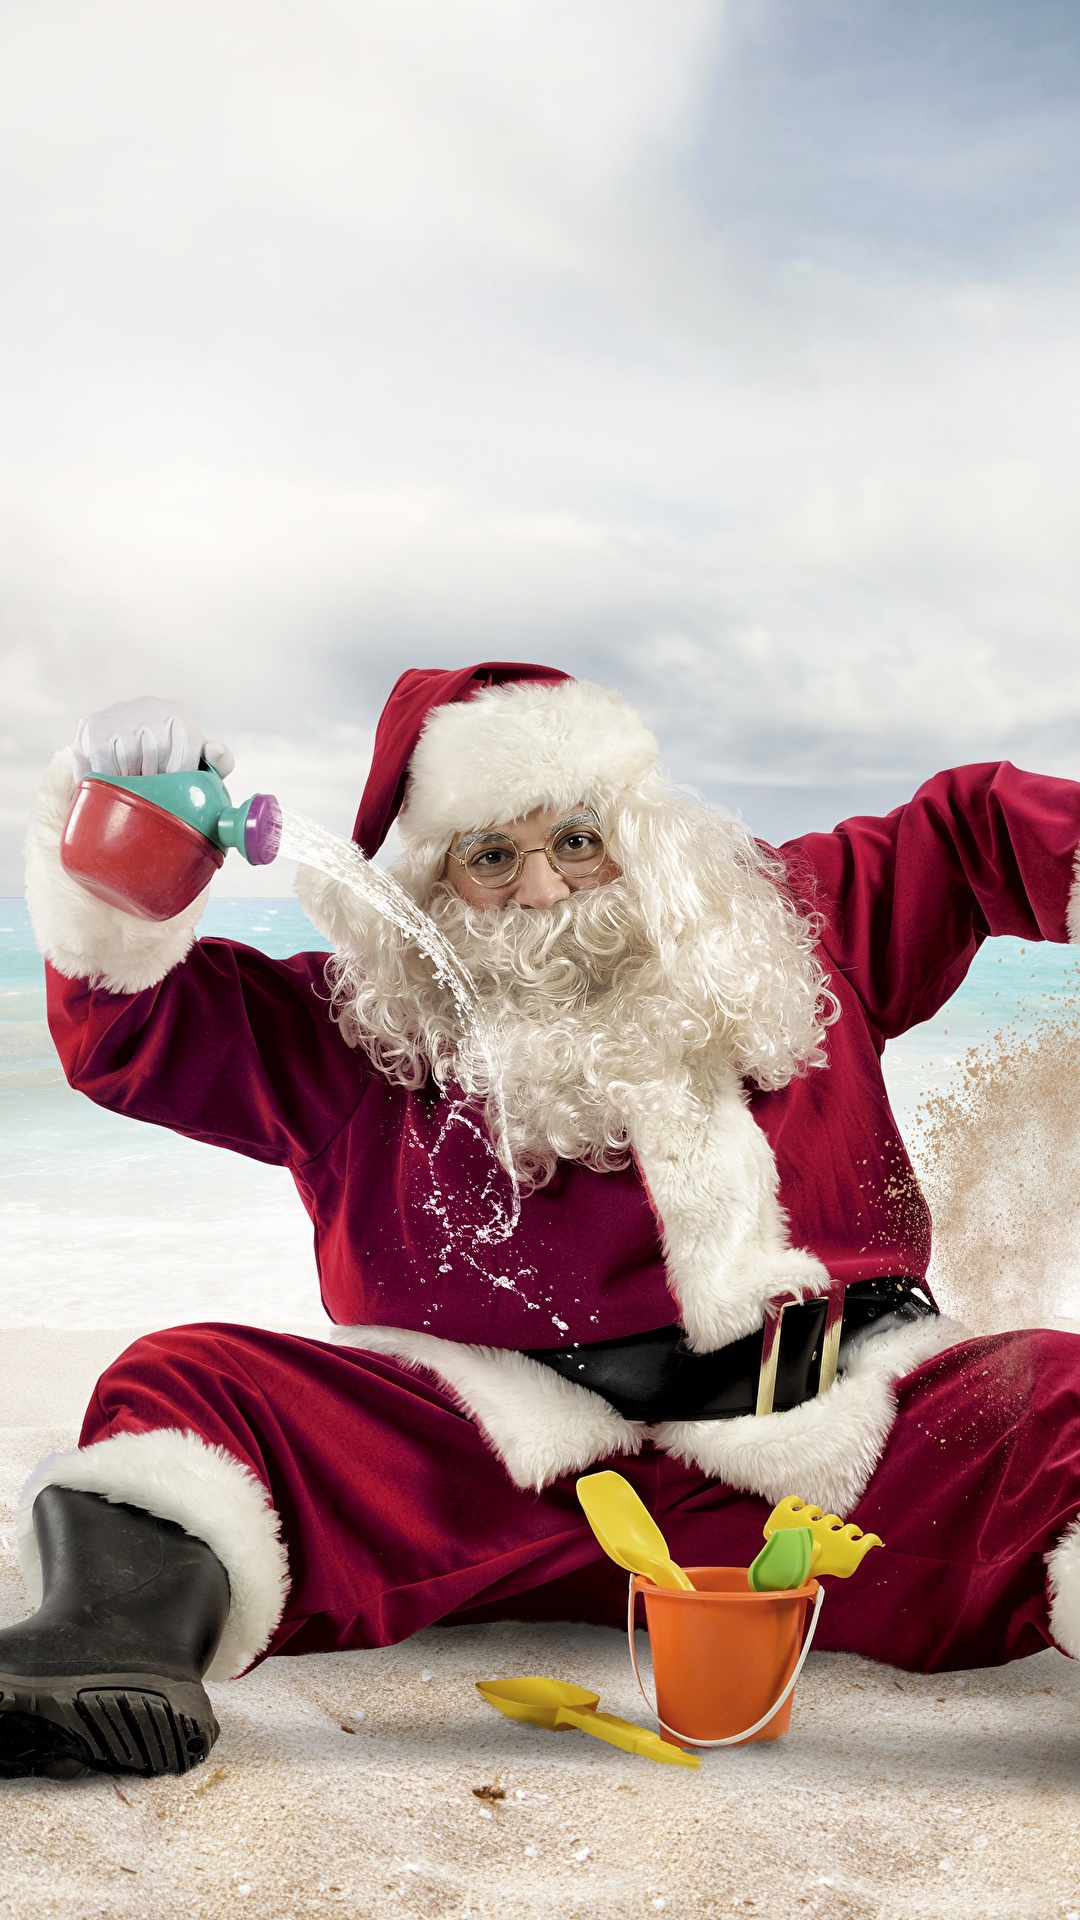 El Día De Navidad, Santa Claus, Playa, Diversión, Navidad. Wallpaper in 1080x1920 Resolution